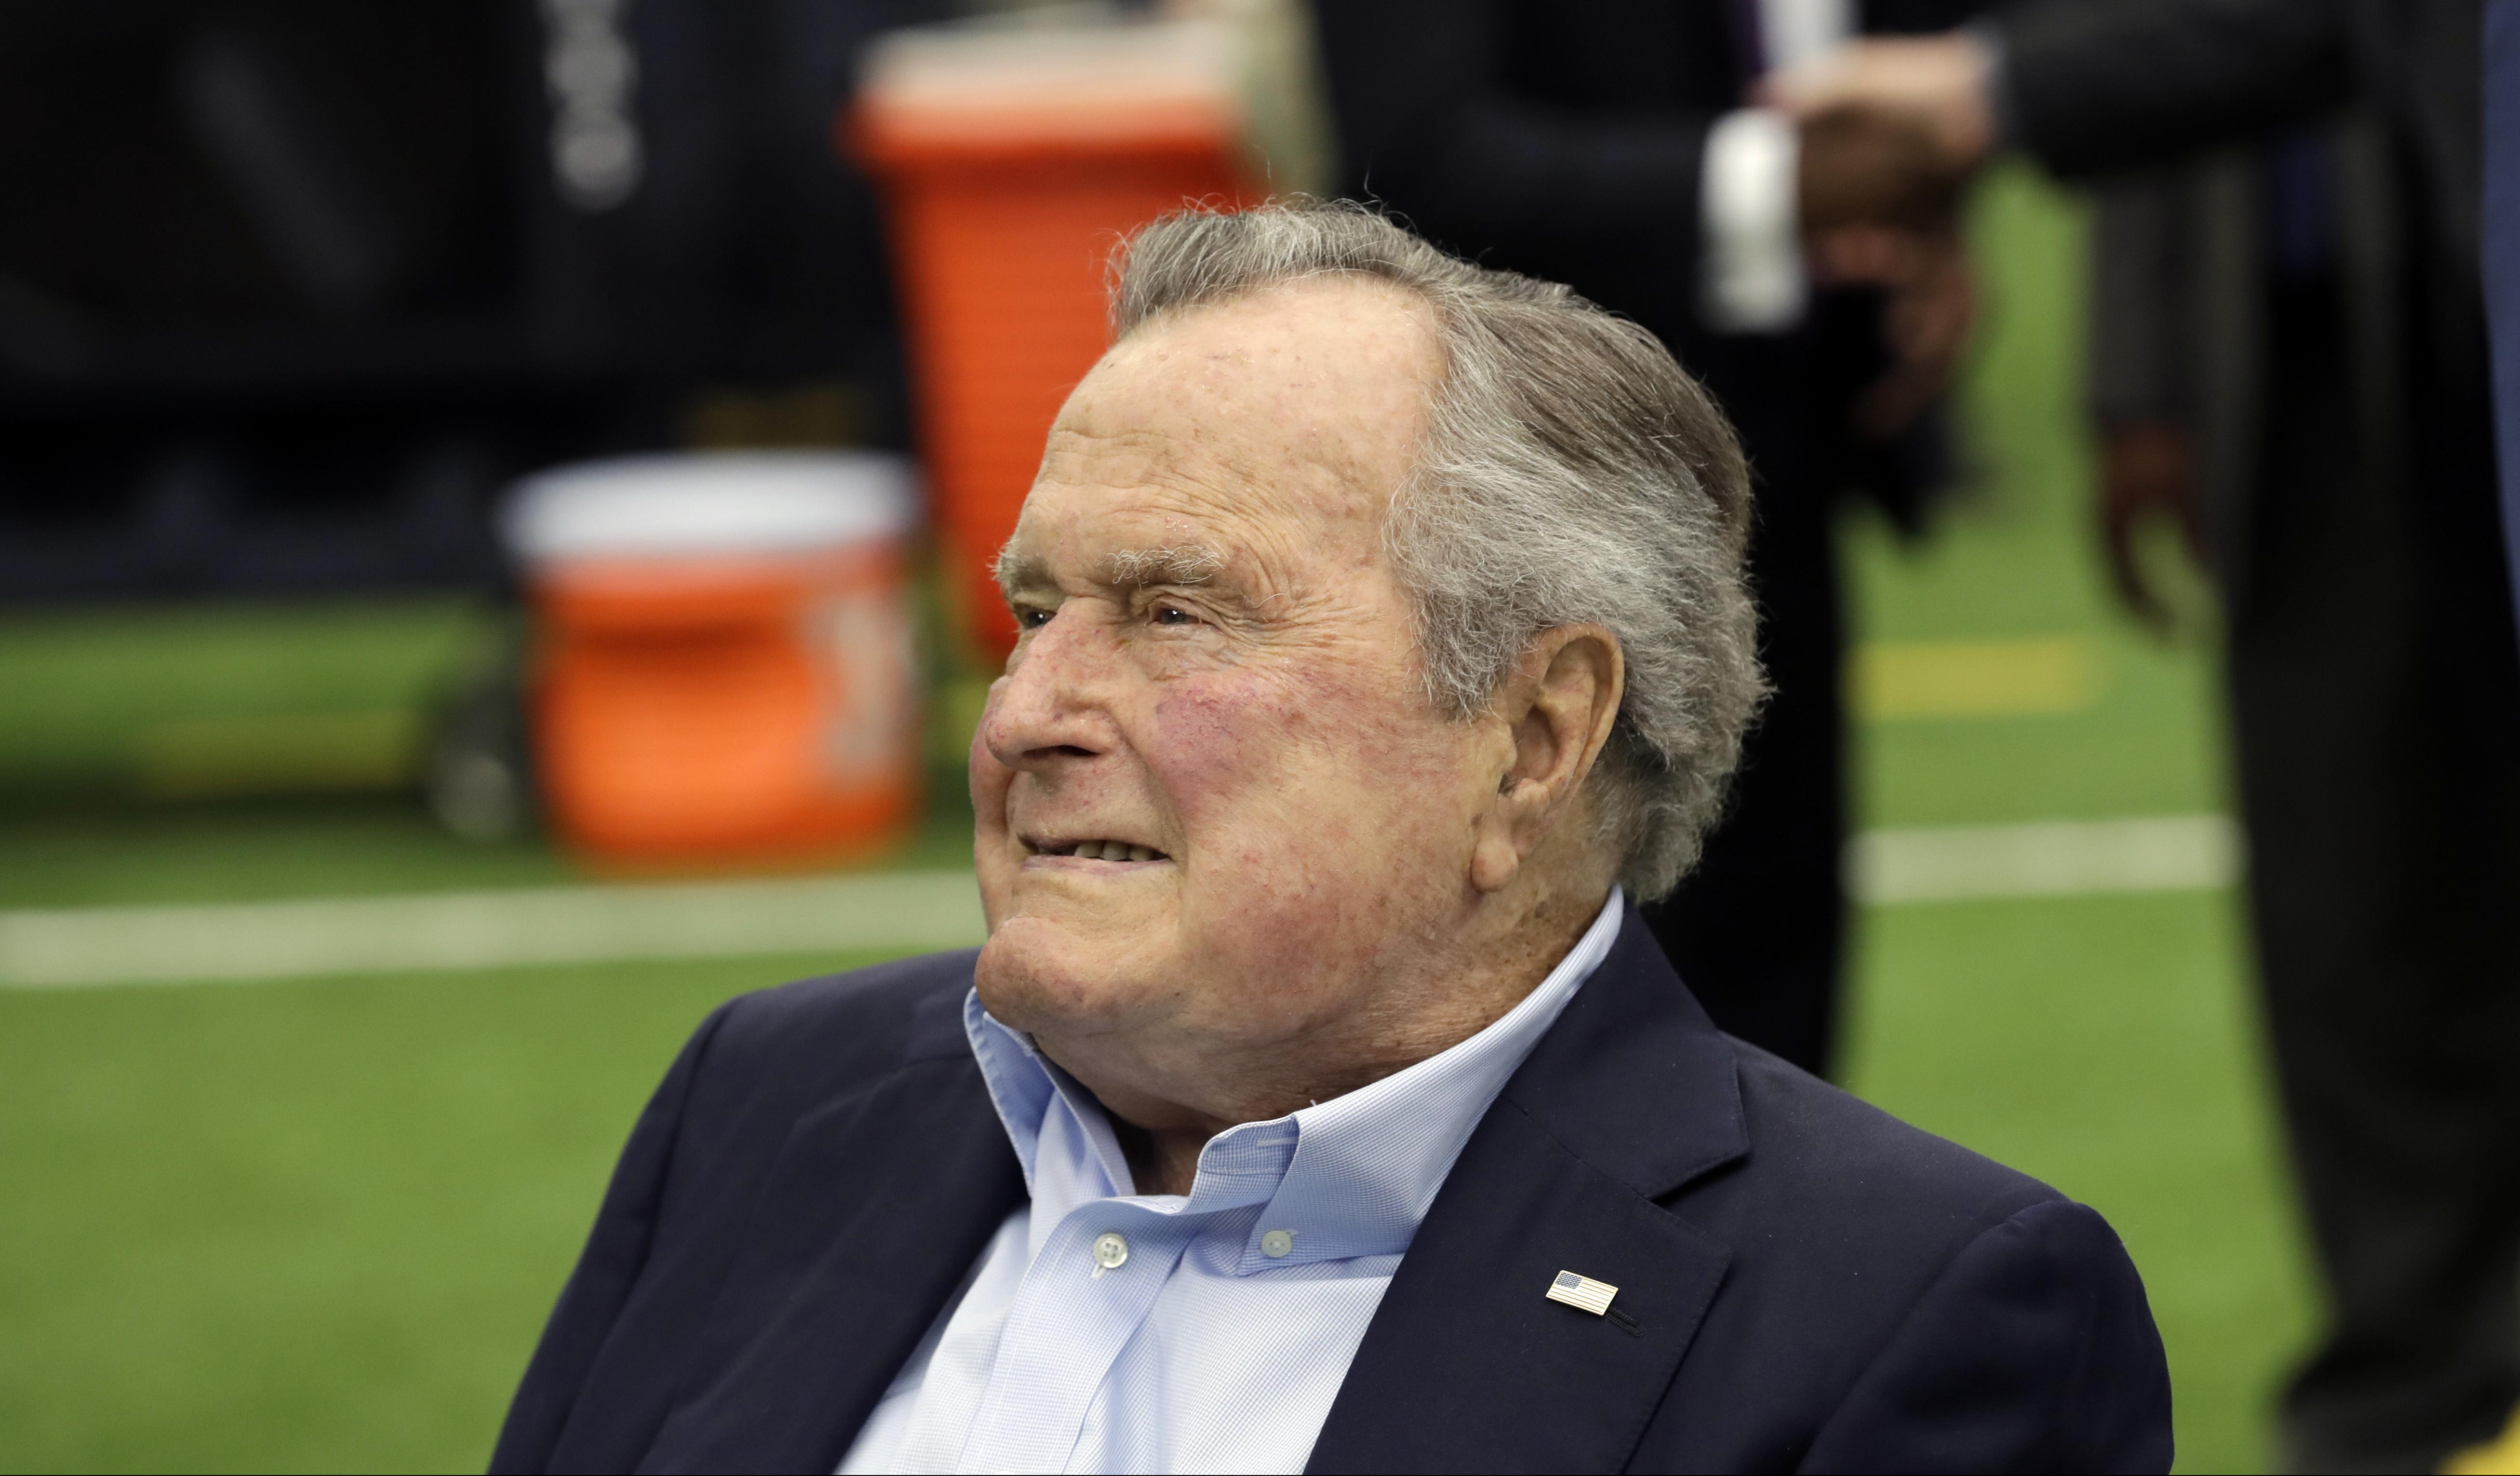 BIVŠI PREDSEDNIK SAD PONOVO U BOLNICI: Džordž Buš stariji hospitalizovan zbog krvnog pritiska!